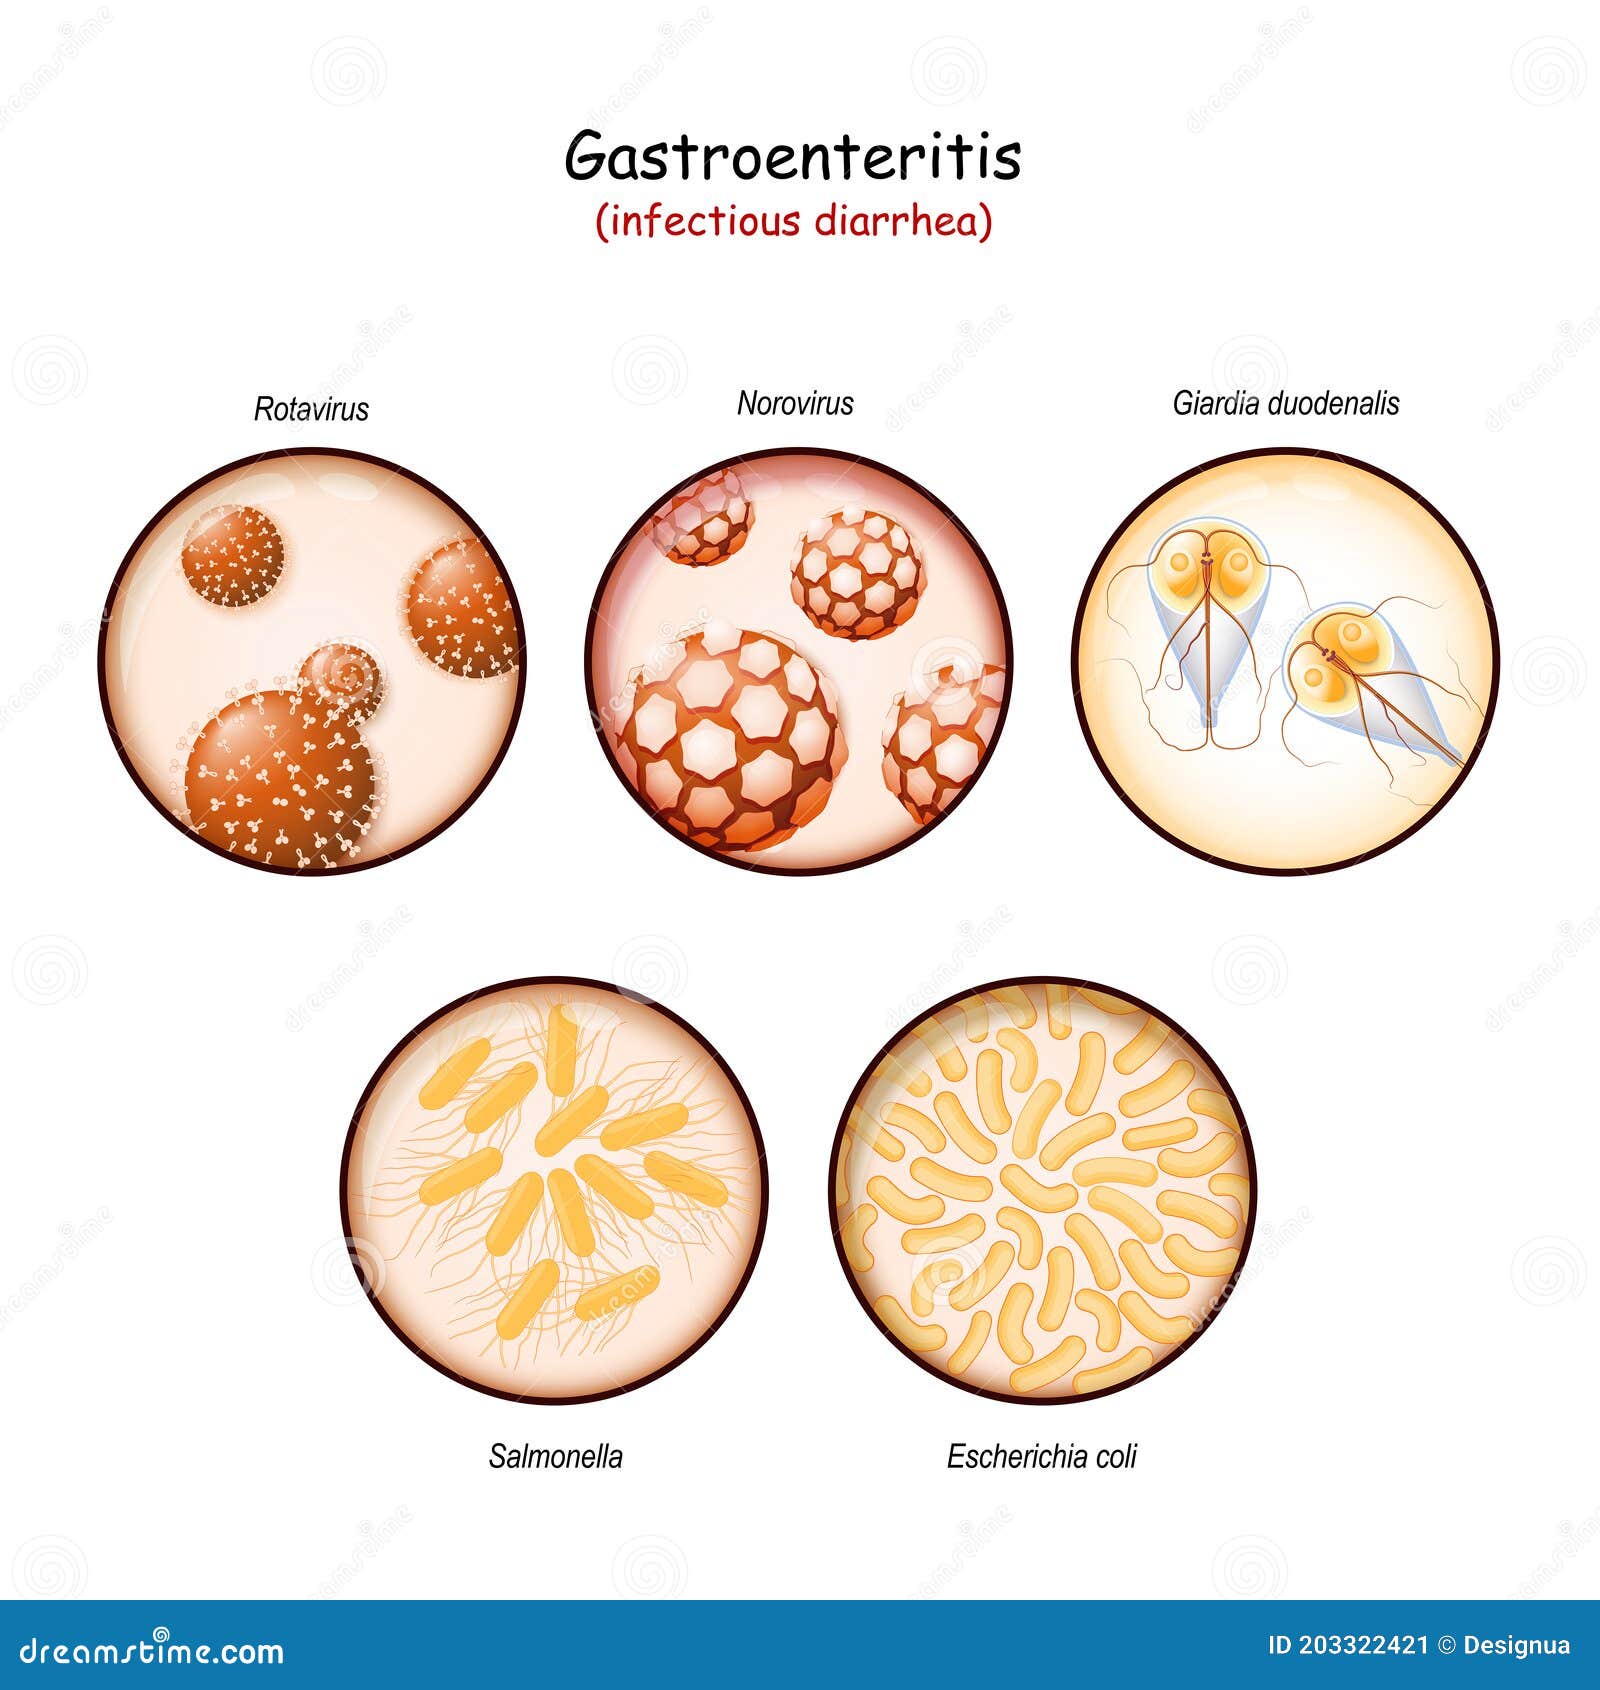 gastroenteritis giardiasis gyorsan megszabadult a papilloma felülvizsgálatoktól